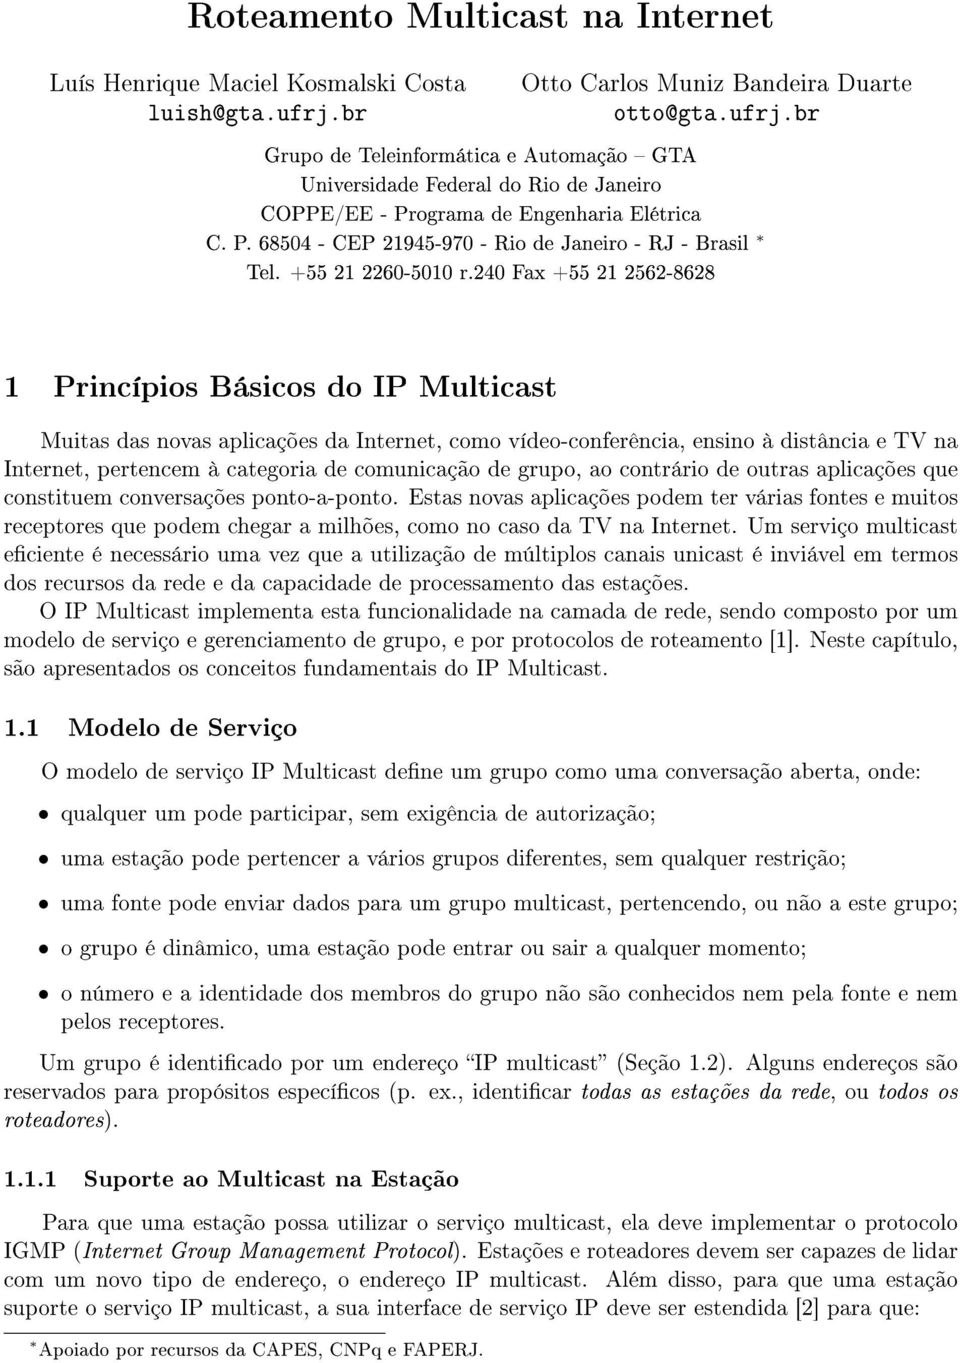 ograma de Engenharia Elétrica C. P. 68504 - CEP 21945-970 - Rio de Janeiro - RJ - Brasil Tel. +55 21 2260-5010 r.